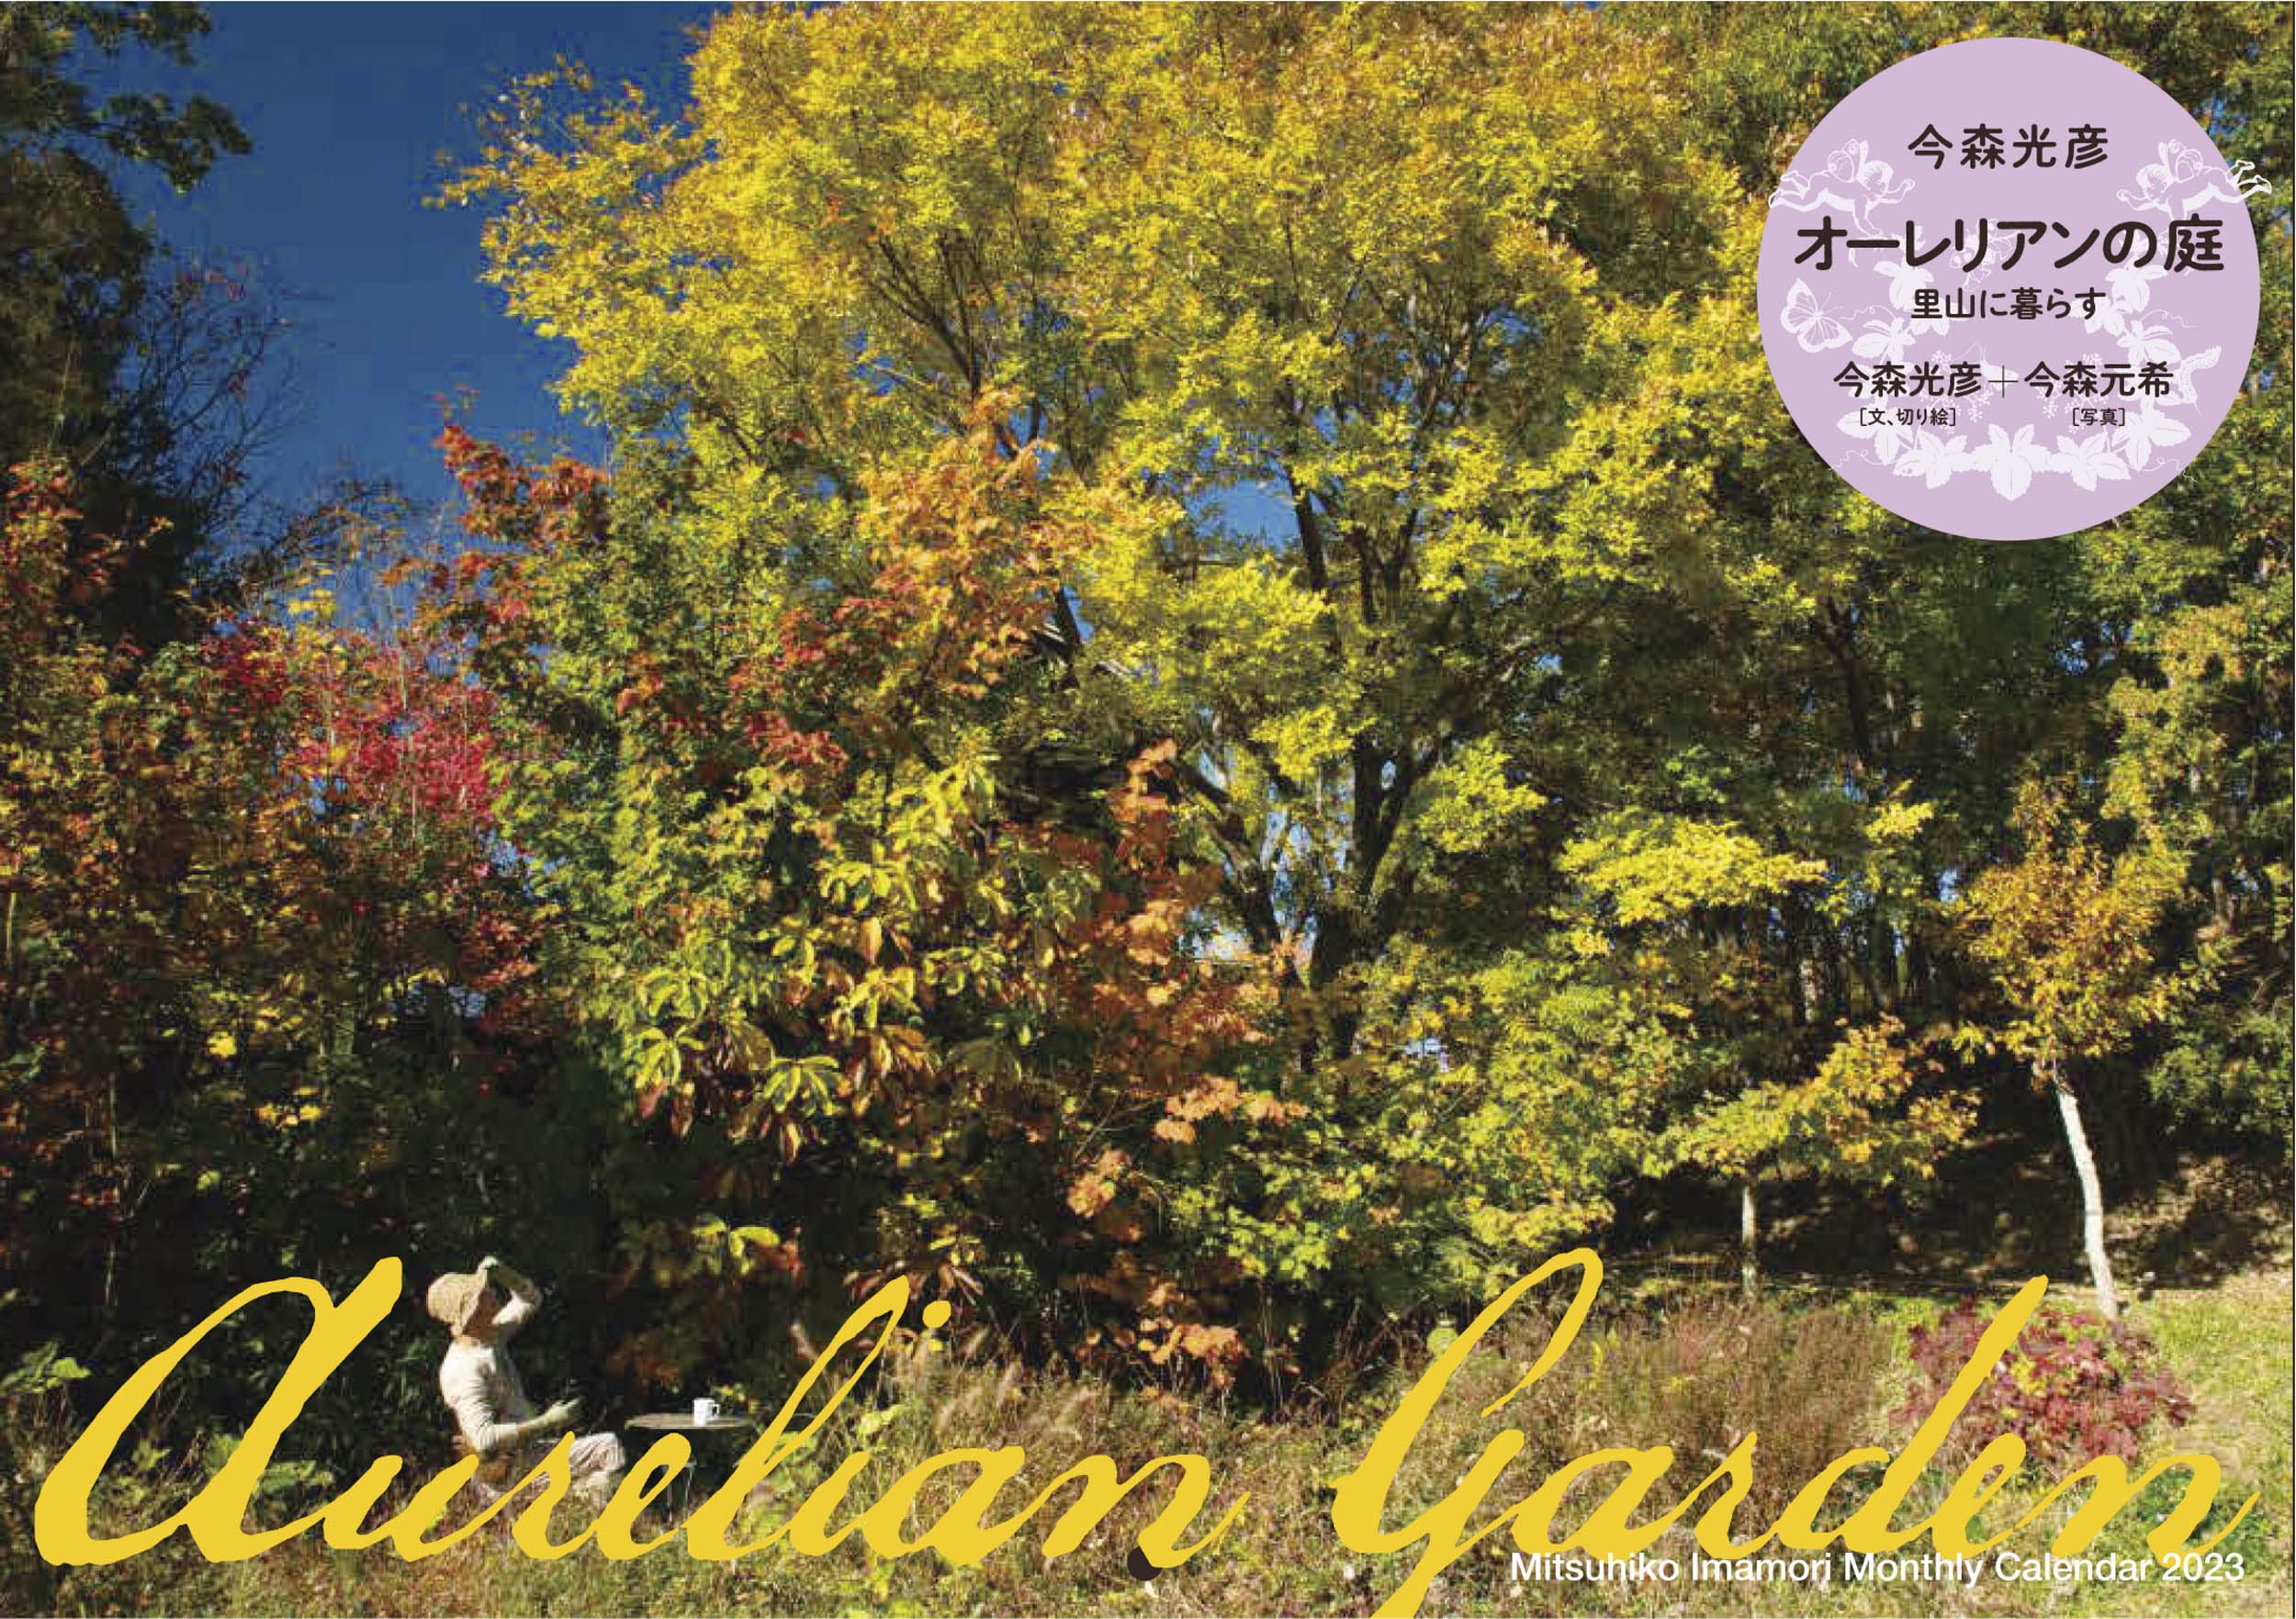 Mitsuhiko Imamori Monthly Calendar 2023 今森光彦 オ-レリアンの庭 里山に暮らす